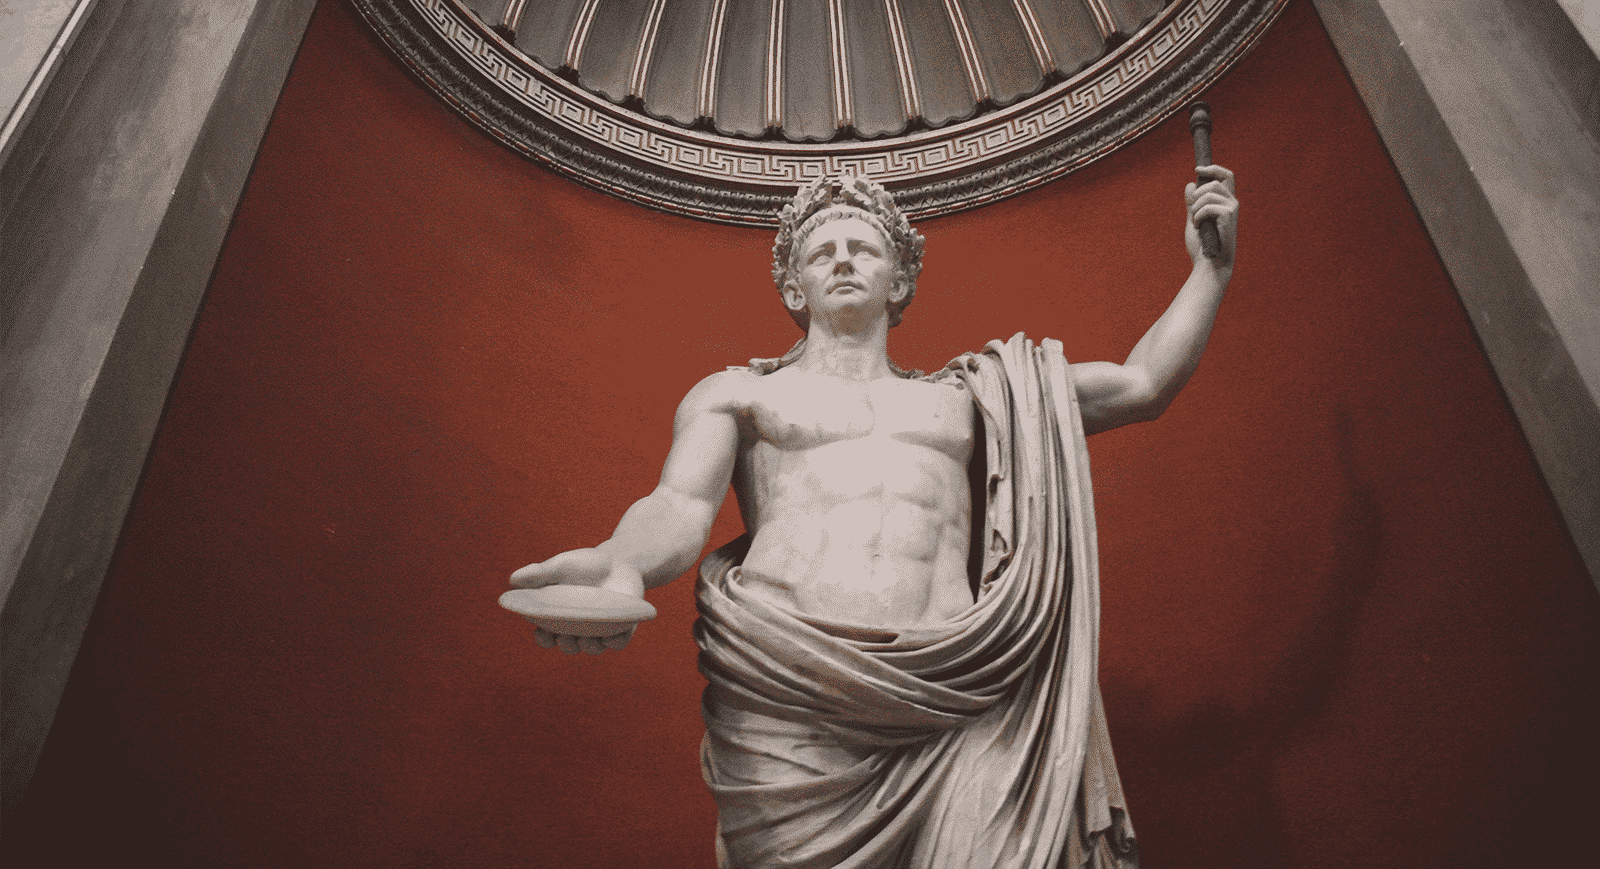 Imperadores romanos: grandes nomes, quem foram e principais feitos